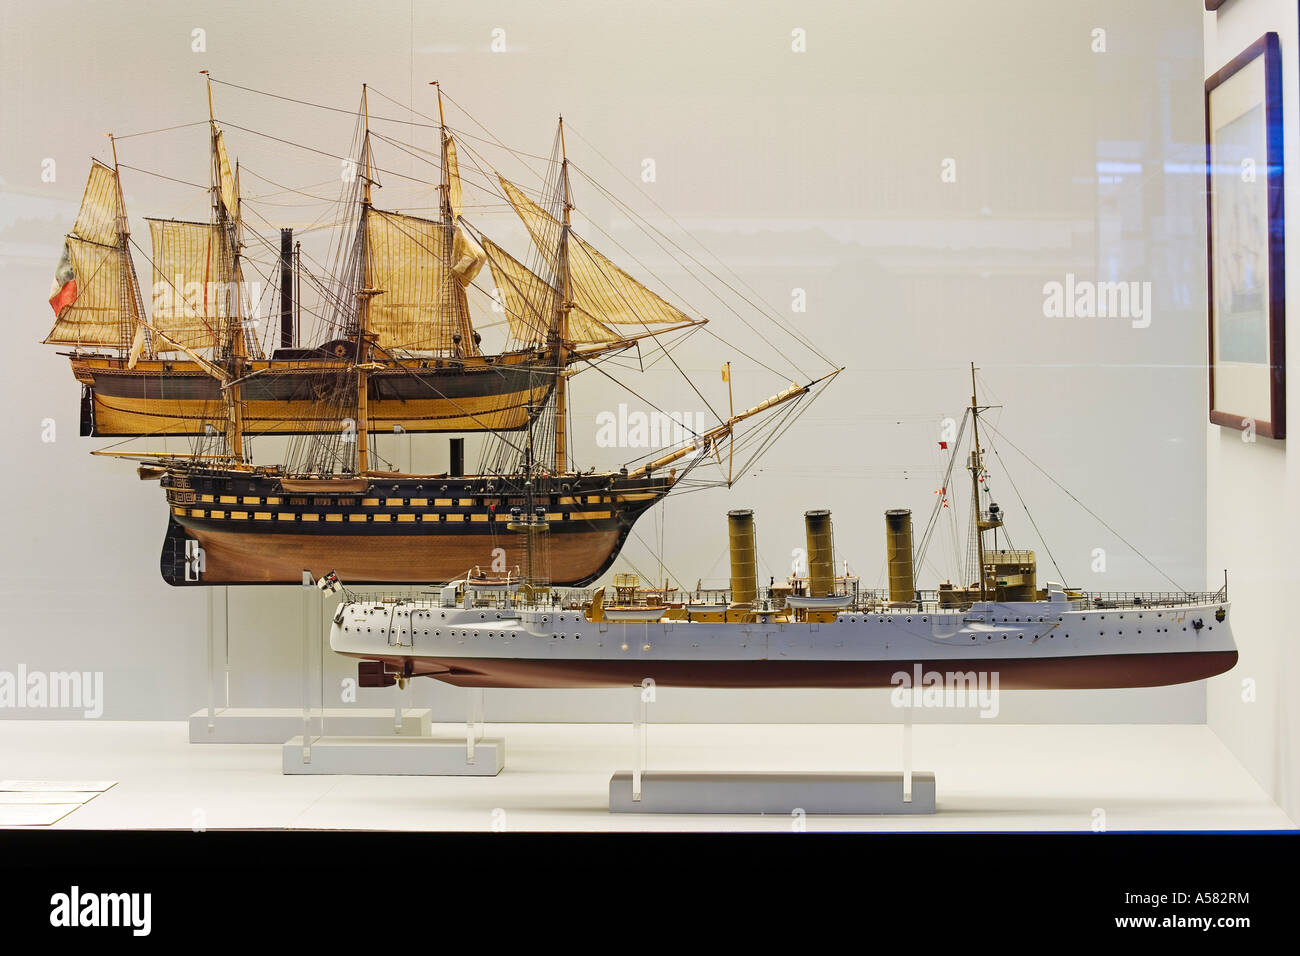 Historische Schiffsmodelle, Verkehrshaus der Schweiz, Luzern, Schweiz  Stockfotografie - Alamy